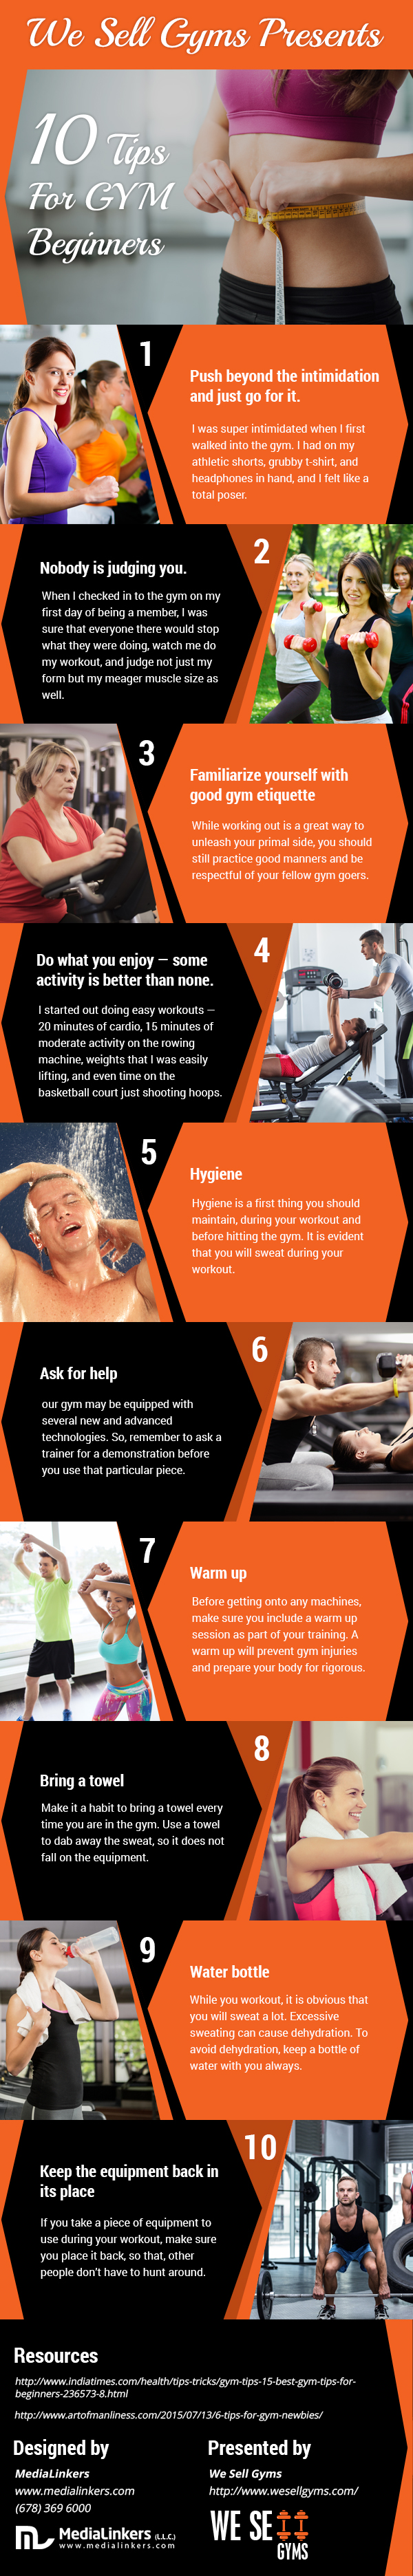 10 Tips for Gym Beginners.jpg